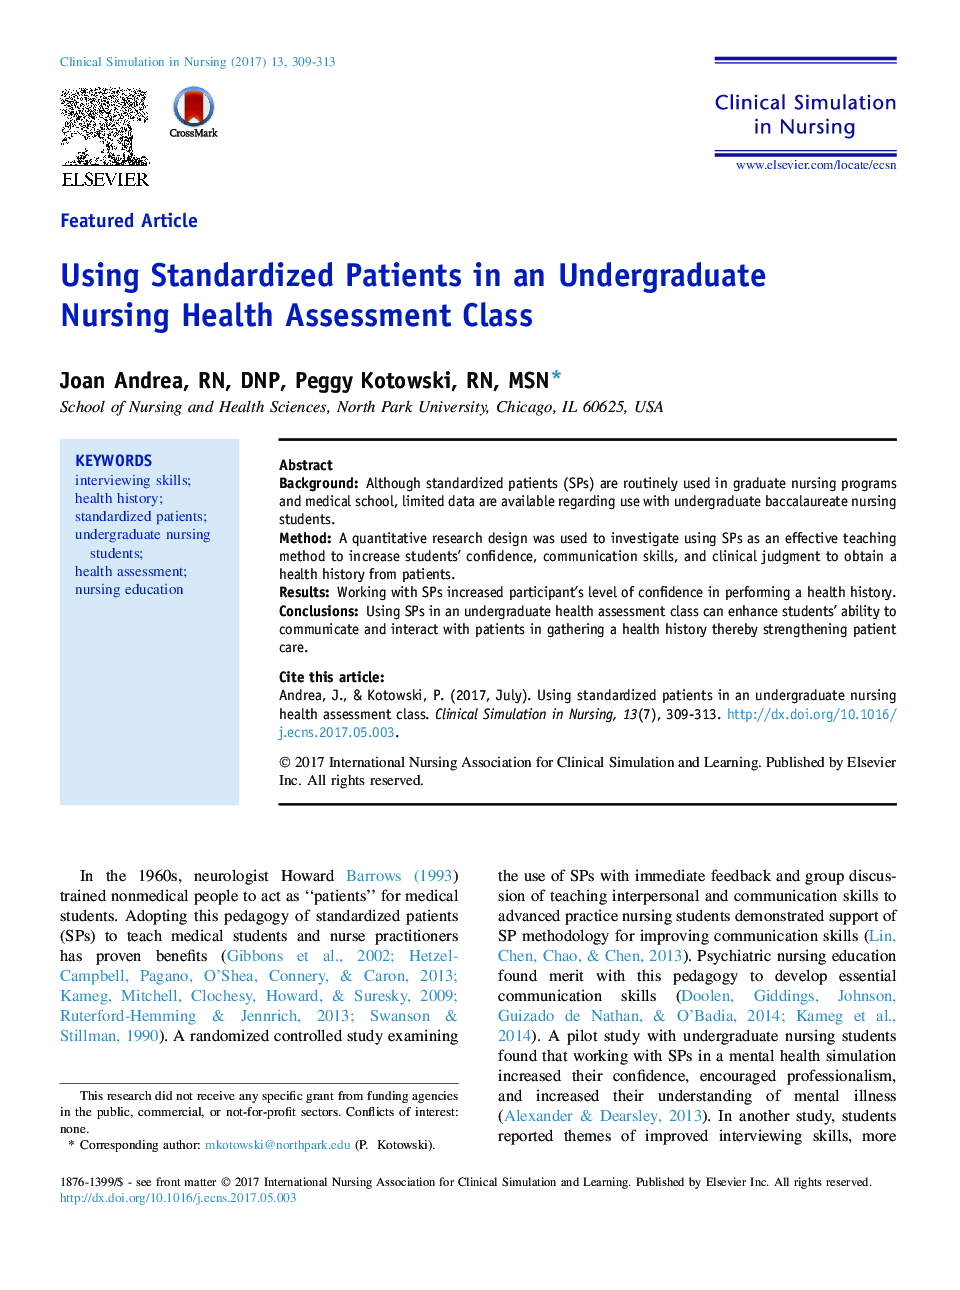 استفاده از بیماران استاندارد در کلاس ارزیابی سلامت پرستاری دانشجویان کارشناسی ارشد 